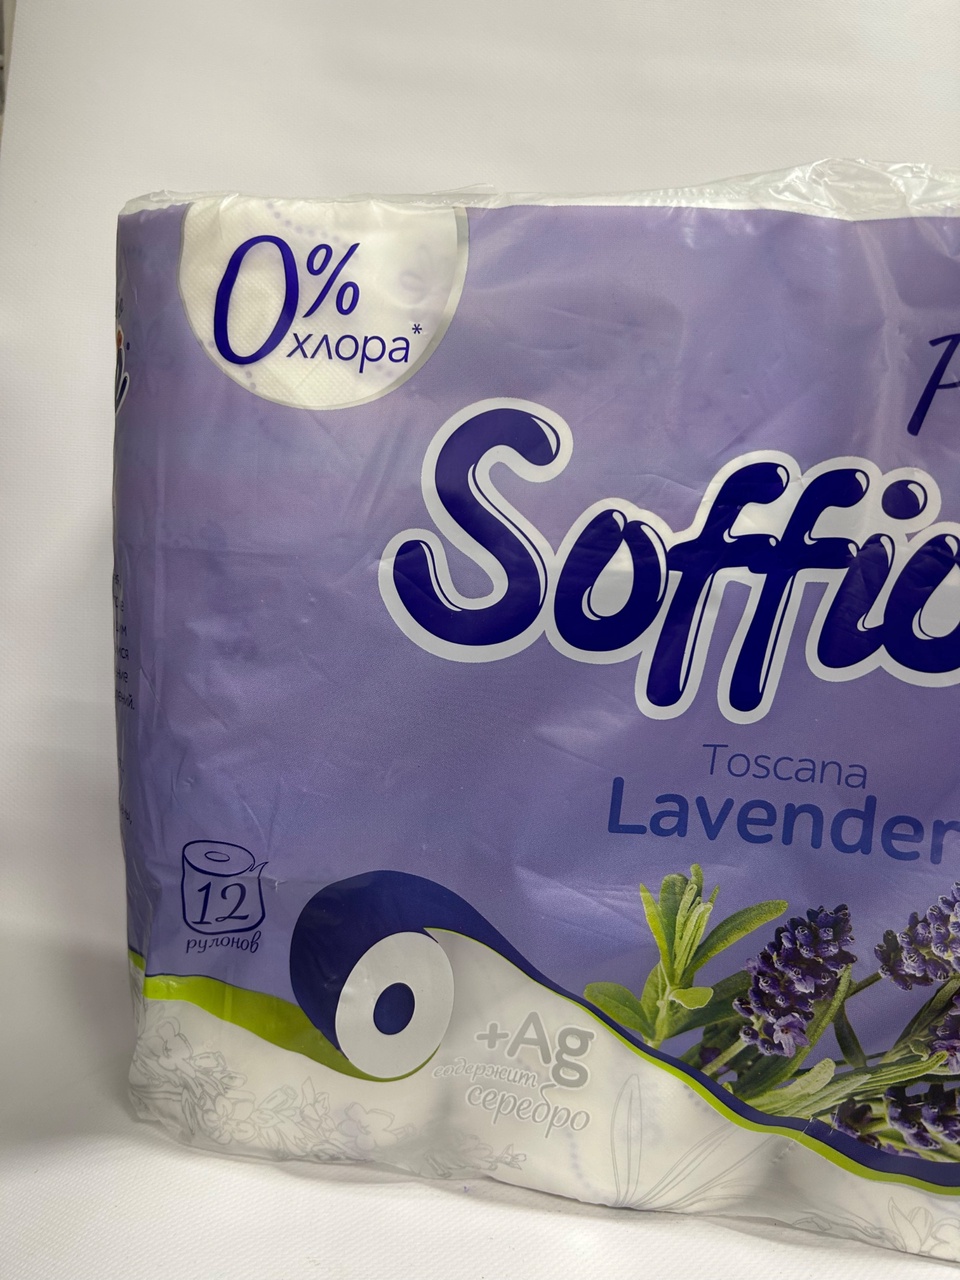 Туалетная бумага Sofione «Лаванда» 12шт - 250 ₽, заказать онлайн.